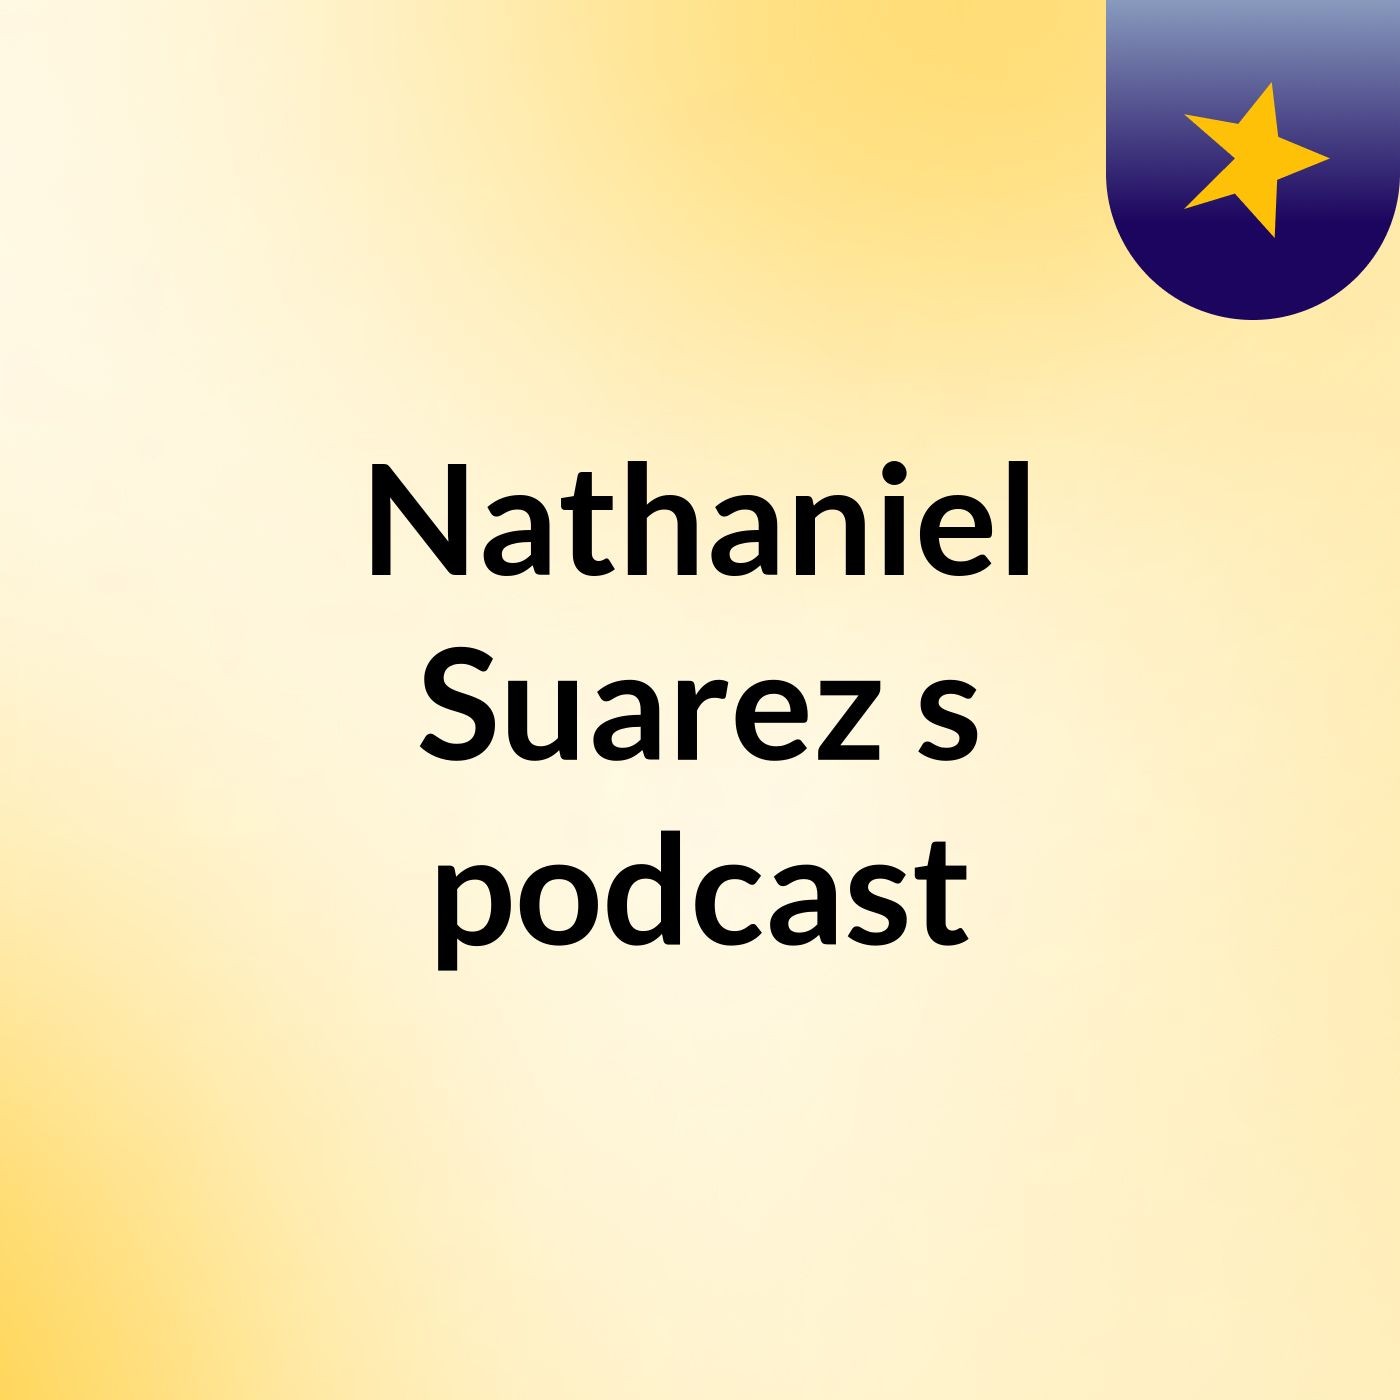 Episode 2 - Nathaniel/jonas podcast